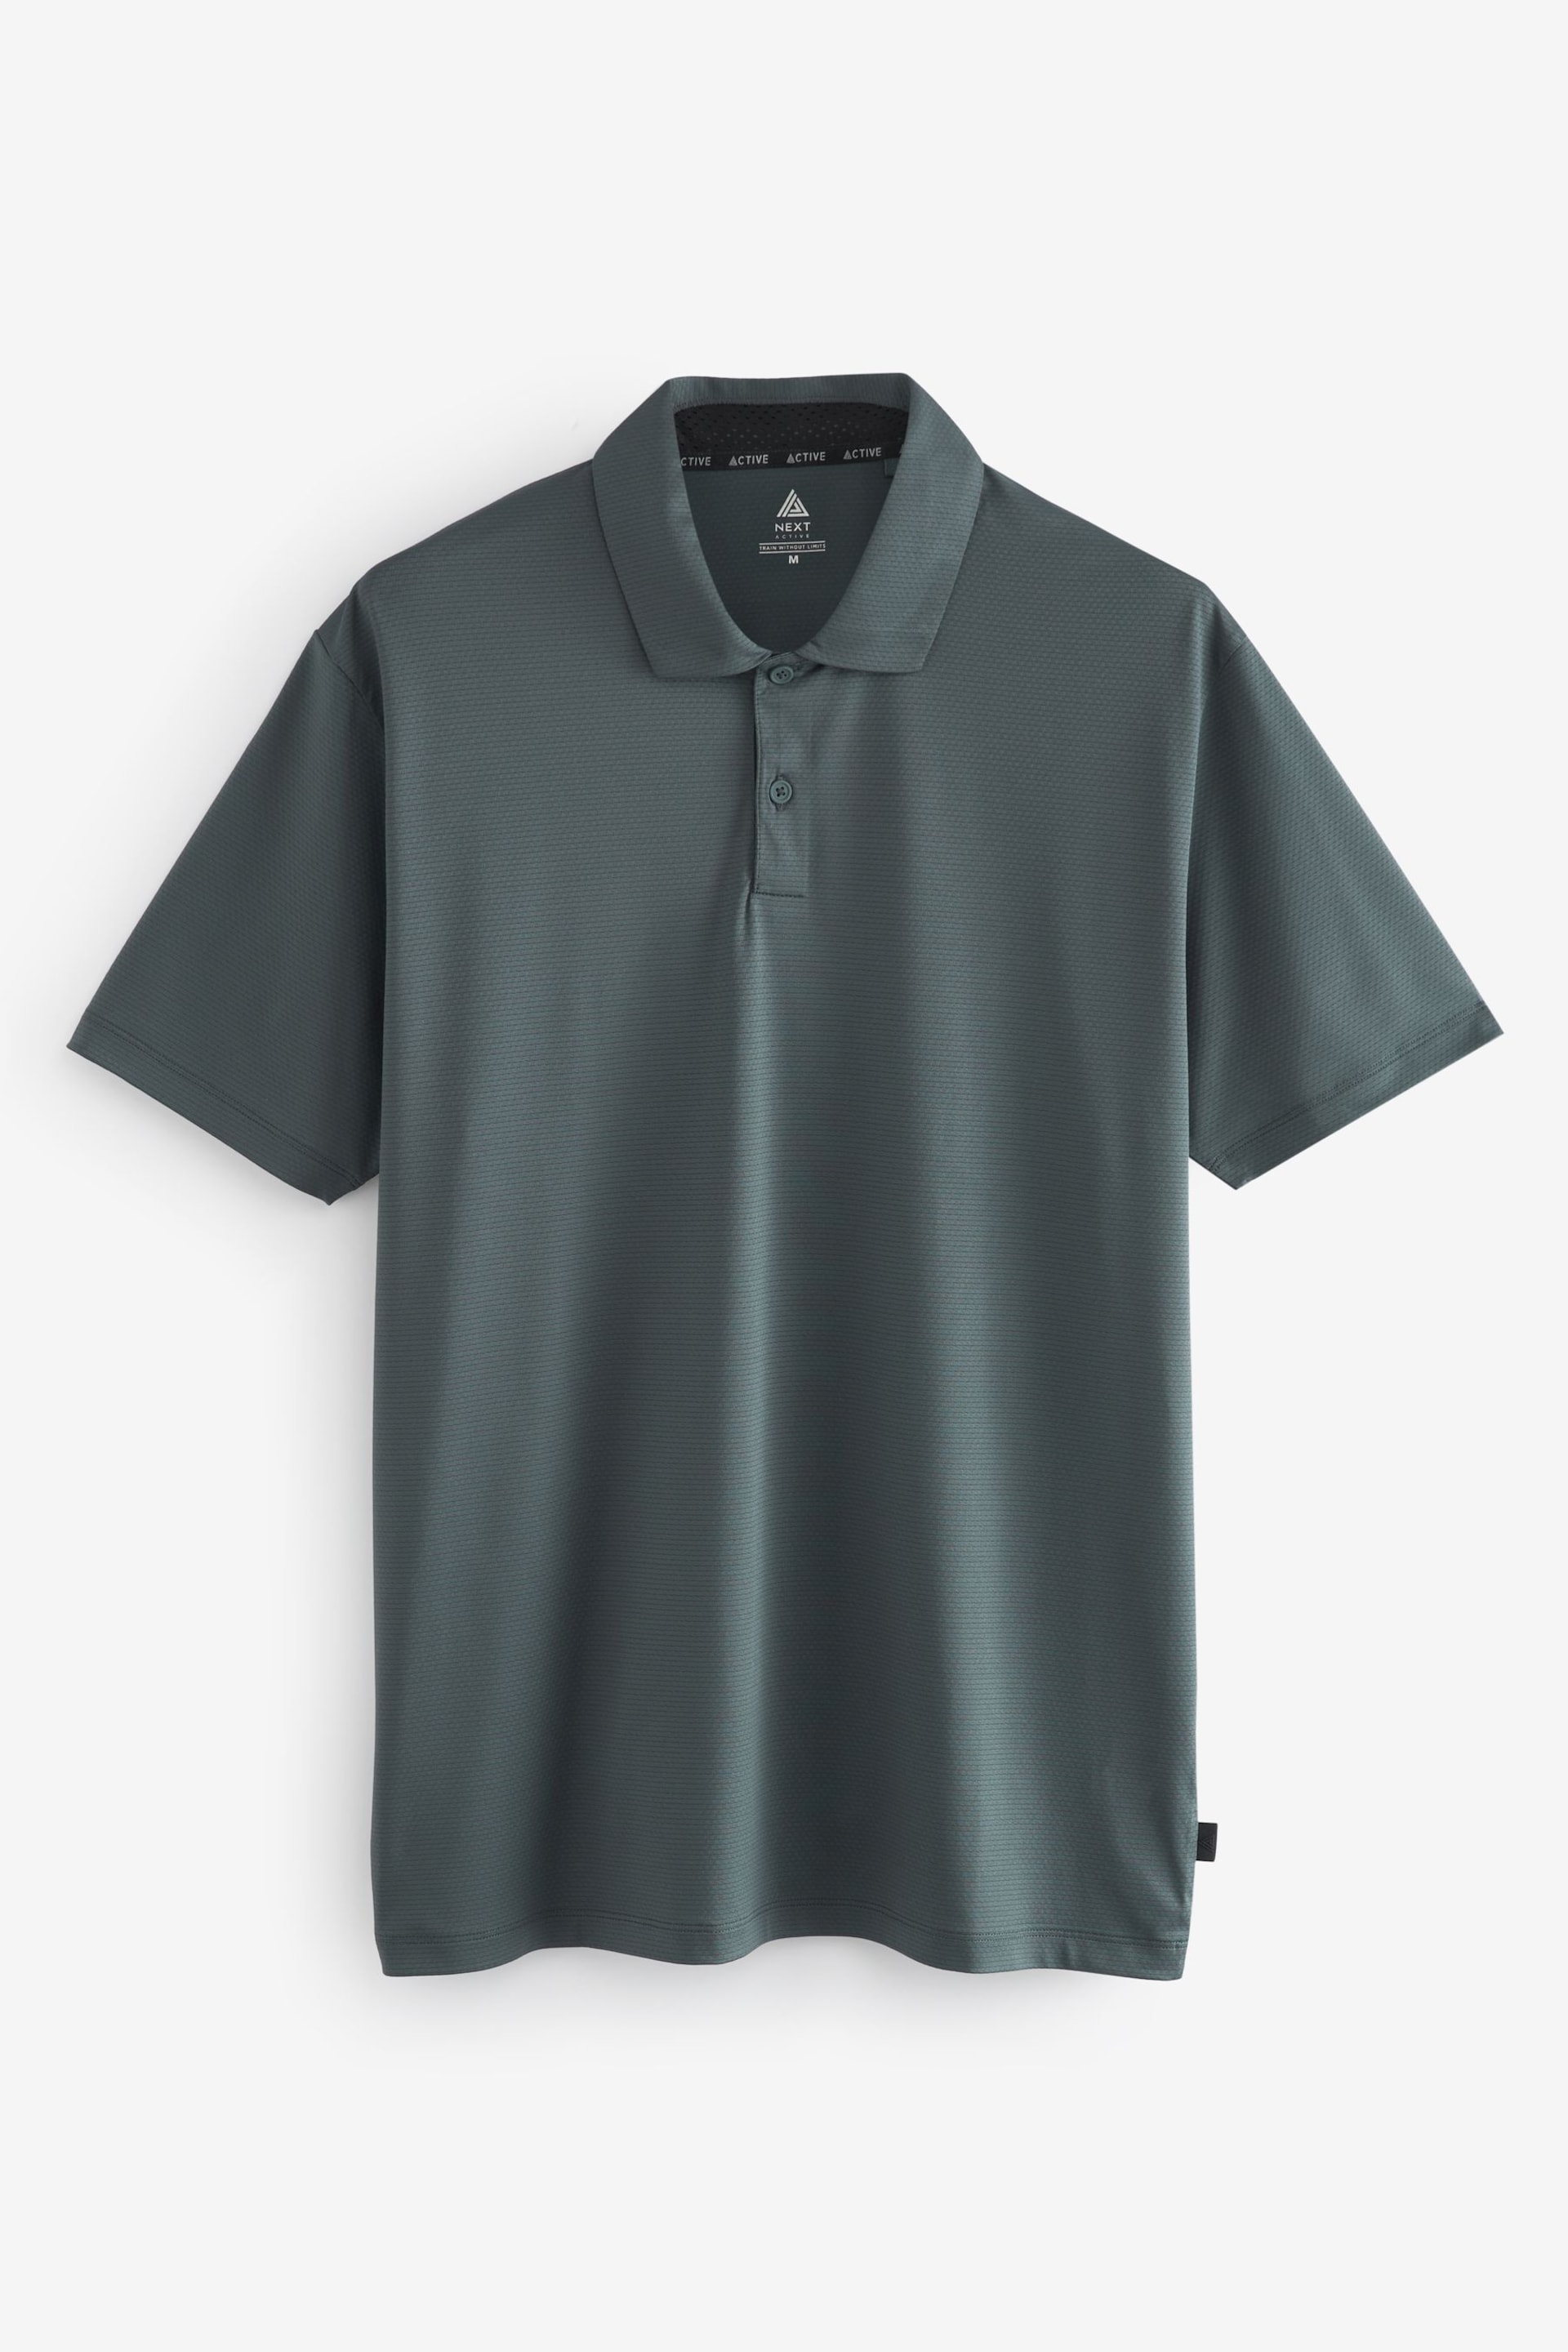 Slate Grey Textured Golf Polo Shirt - Image 6 of 8